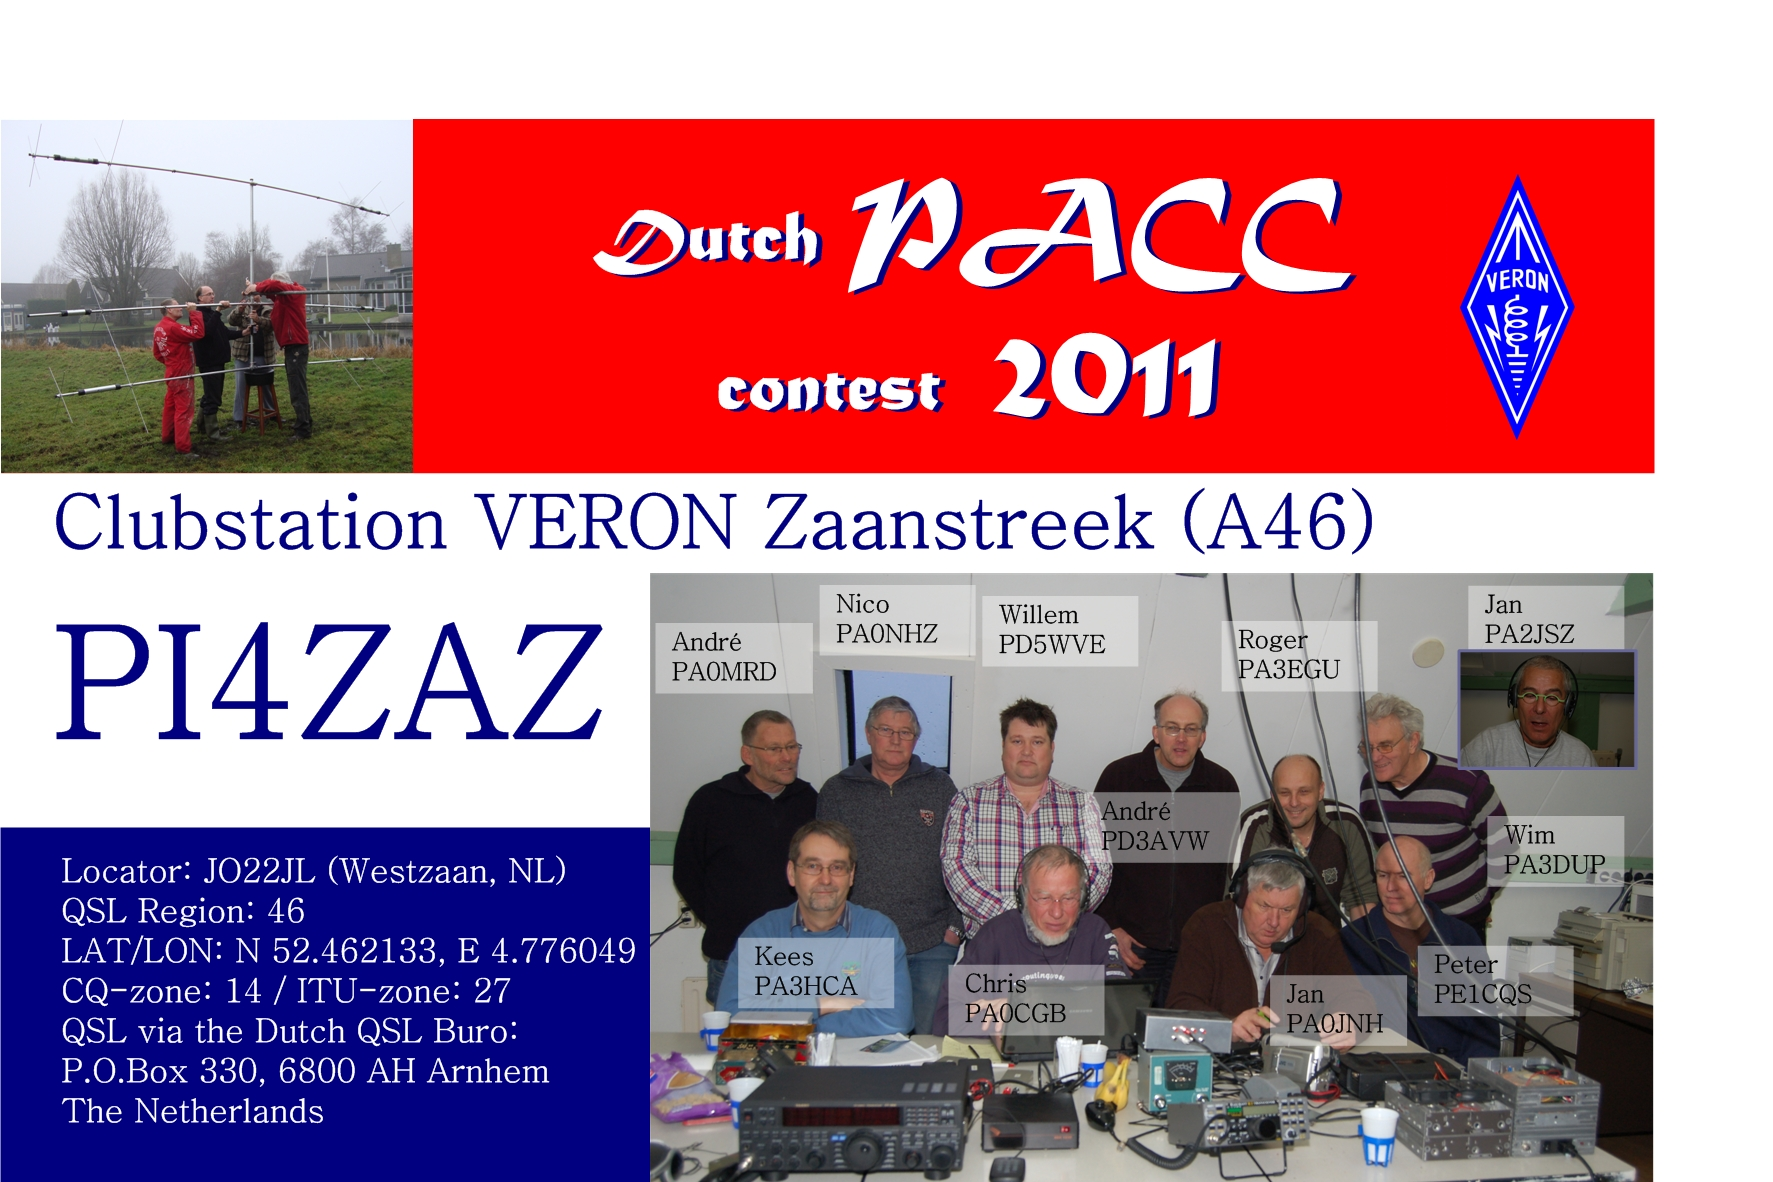 Van de voorzitter Beste OM s en (X)YL s, De PACC contest met PI4ZAZ is dit jaar weer een groot succes geweest met vele QSO's vanuit de knutselclub in Westzaan.